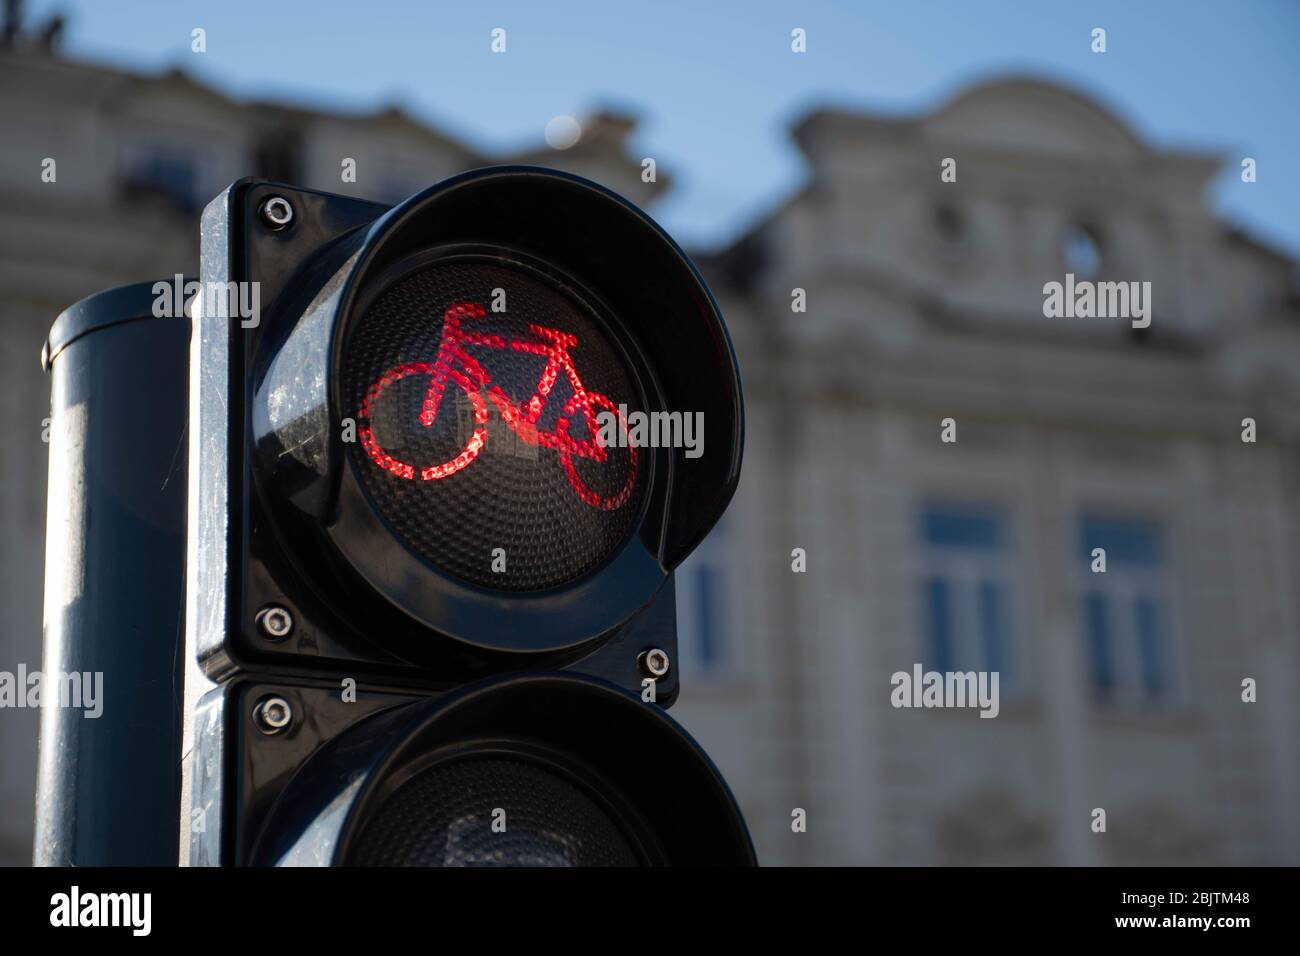 Trasporto sostenibile. Segnale del traffico in bicicletta, luce rossa, bici da strada, zona o area libera per biciclette, condivisione delle biciclette Foto Stock